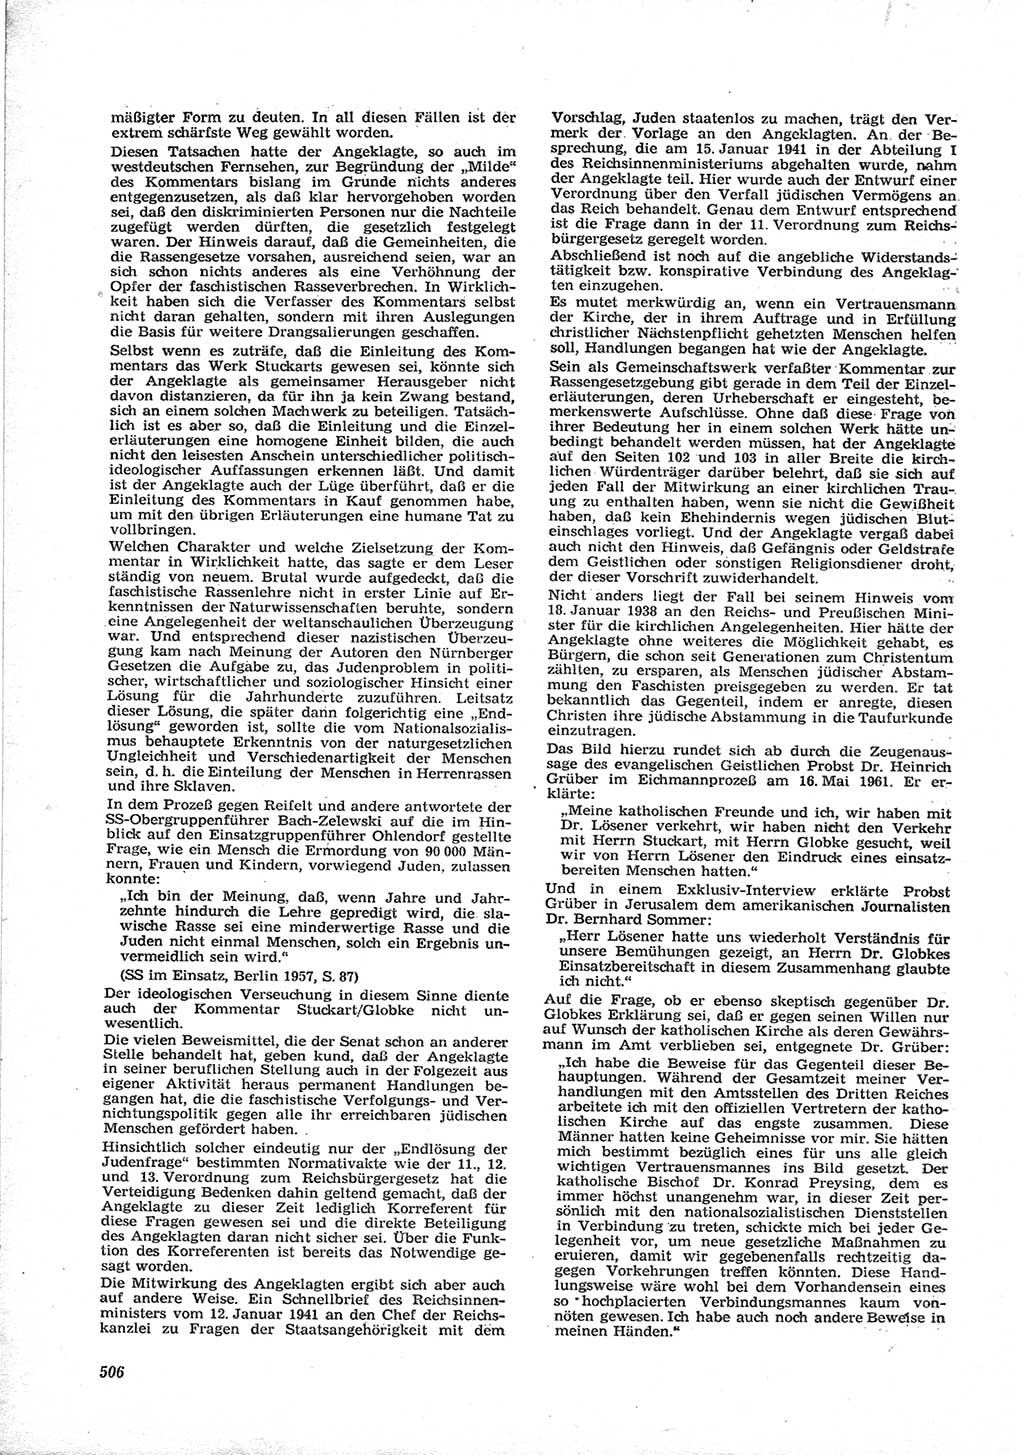 Neue Justiz (NJ), Zeitschrift für Recht und Rechtswissenschaft [Deutsche Demokratische Republik (DDR)], 17. Jahrgang 1963, Seite 506 (NJ DDR 1963, S. 506)